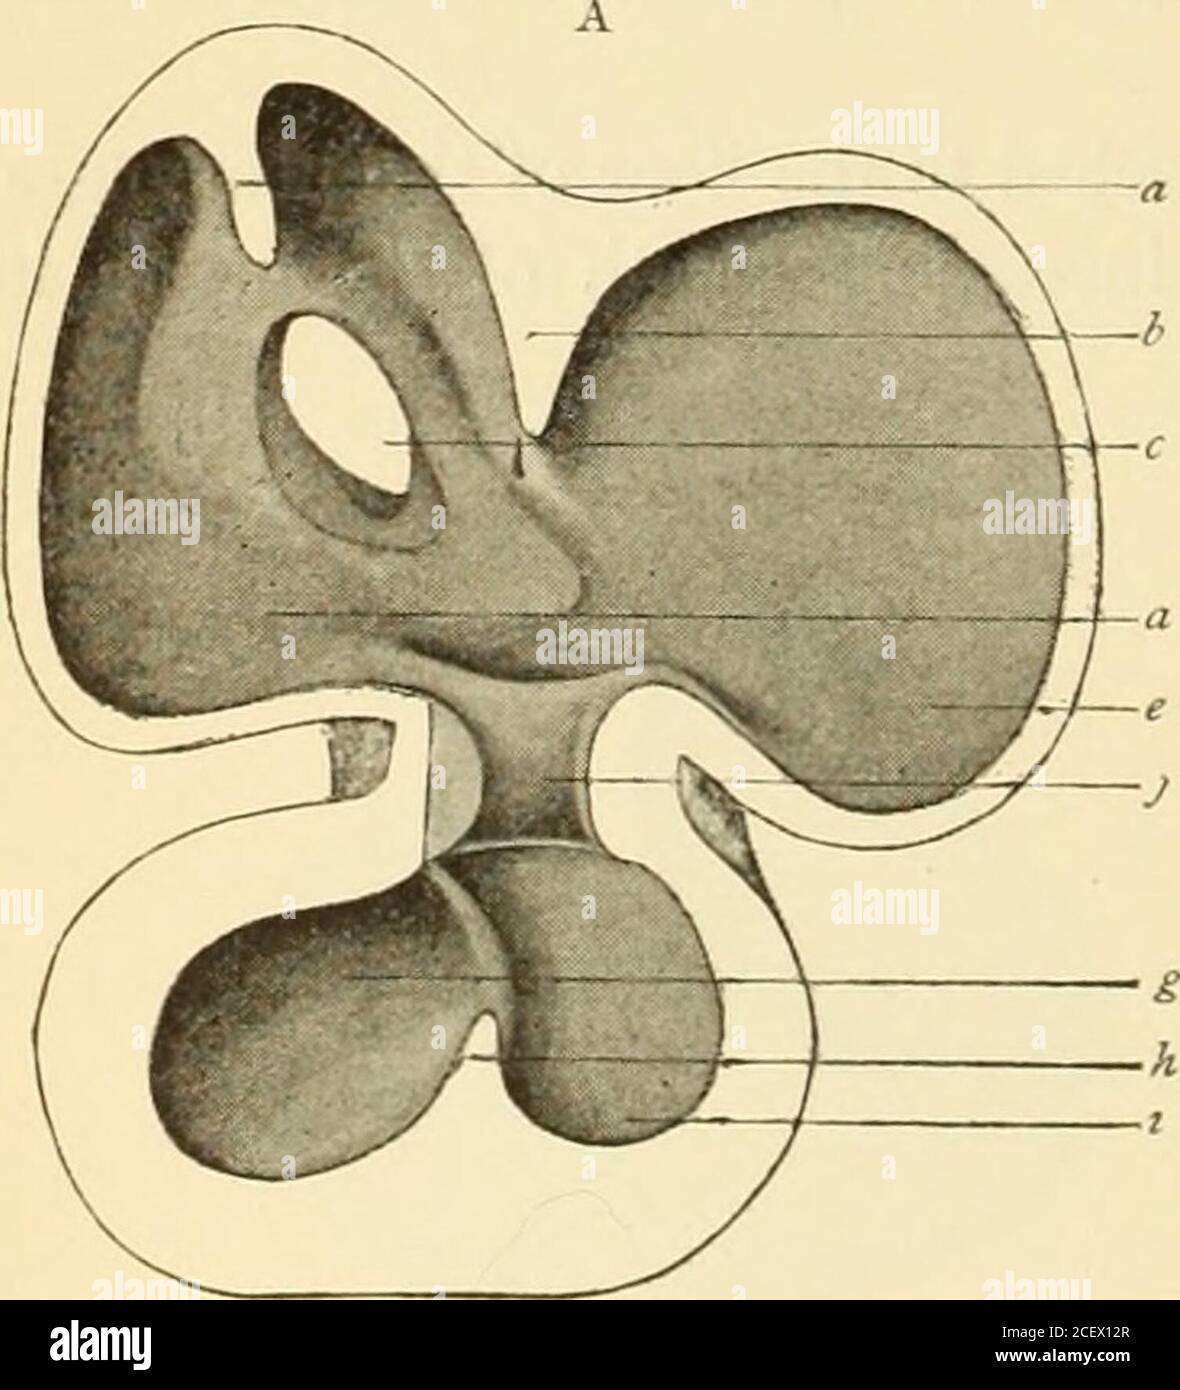 . Un libro de texto americano de obstetricia. Para profesionales y estudiantes. Fig. 95.-A, corazón de embrión humano de unos 4.3 mm. (HIS): A, aurícula; b, porción de la aurícula corre-esponjosa con apéndice auricular; c, truneus arterioso; d, canal auricular; e, ventrículo primitivo. B,corazón del embrión humano de aproximadamente la quinta semana (HIS): A, aurícula izquierda; b, aurícula derecha; c, truncus arterio-sus; d, ranura interventricular; e, ventrículo derecho; /, ventrículo izquierdo. Divisiones—una cámara venosa inferior y posterior y un compartimento superior y anteriorarterial—hacia y desde los cuales pasan el venoso primitivo más grande Foto de stock